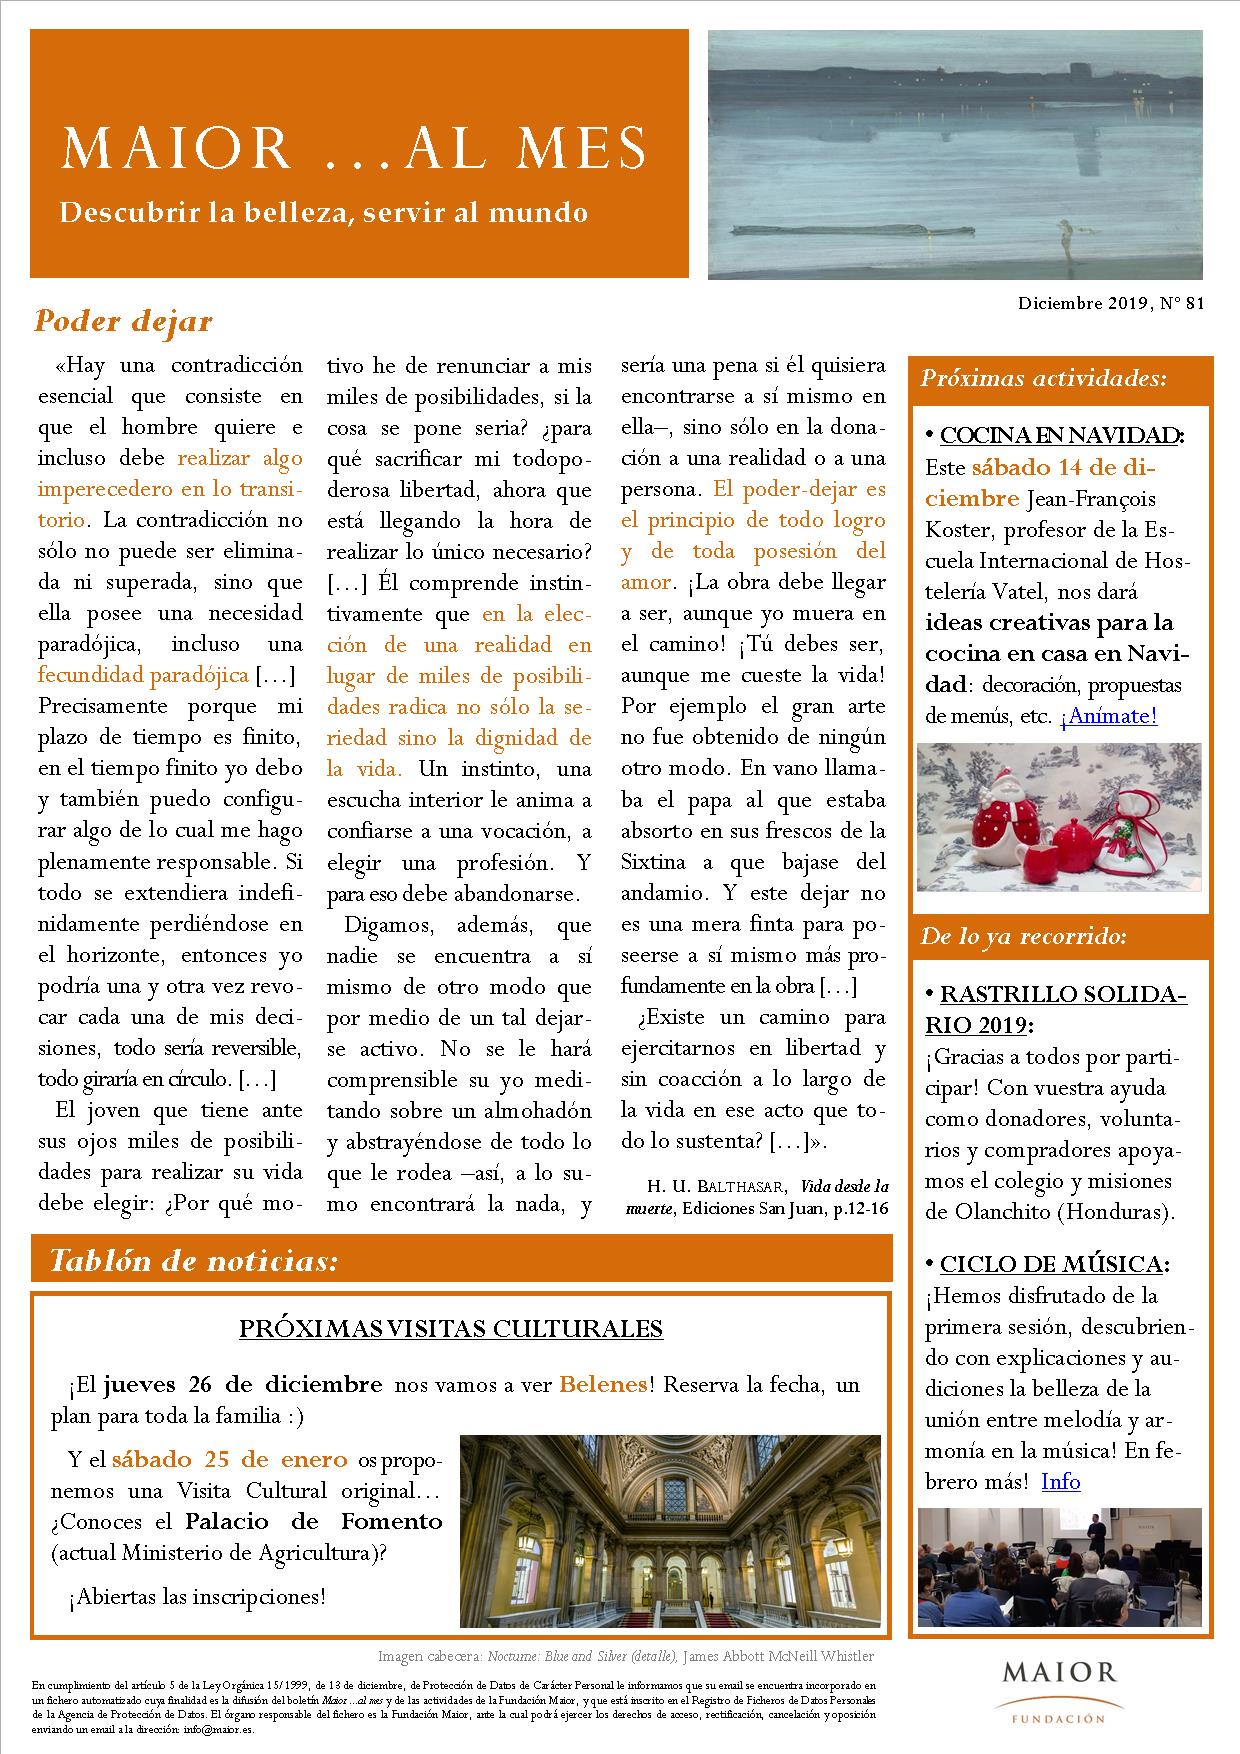 Boletín mensual de noticias y actividades de la Fundación Maior. Edición de diciembre 2019